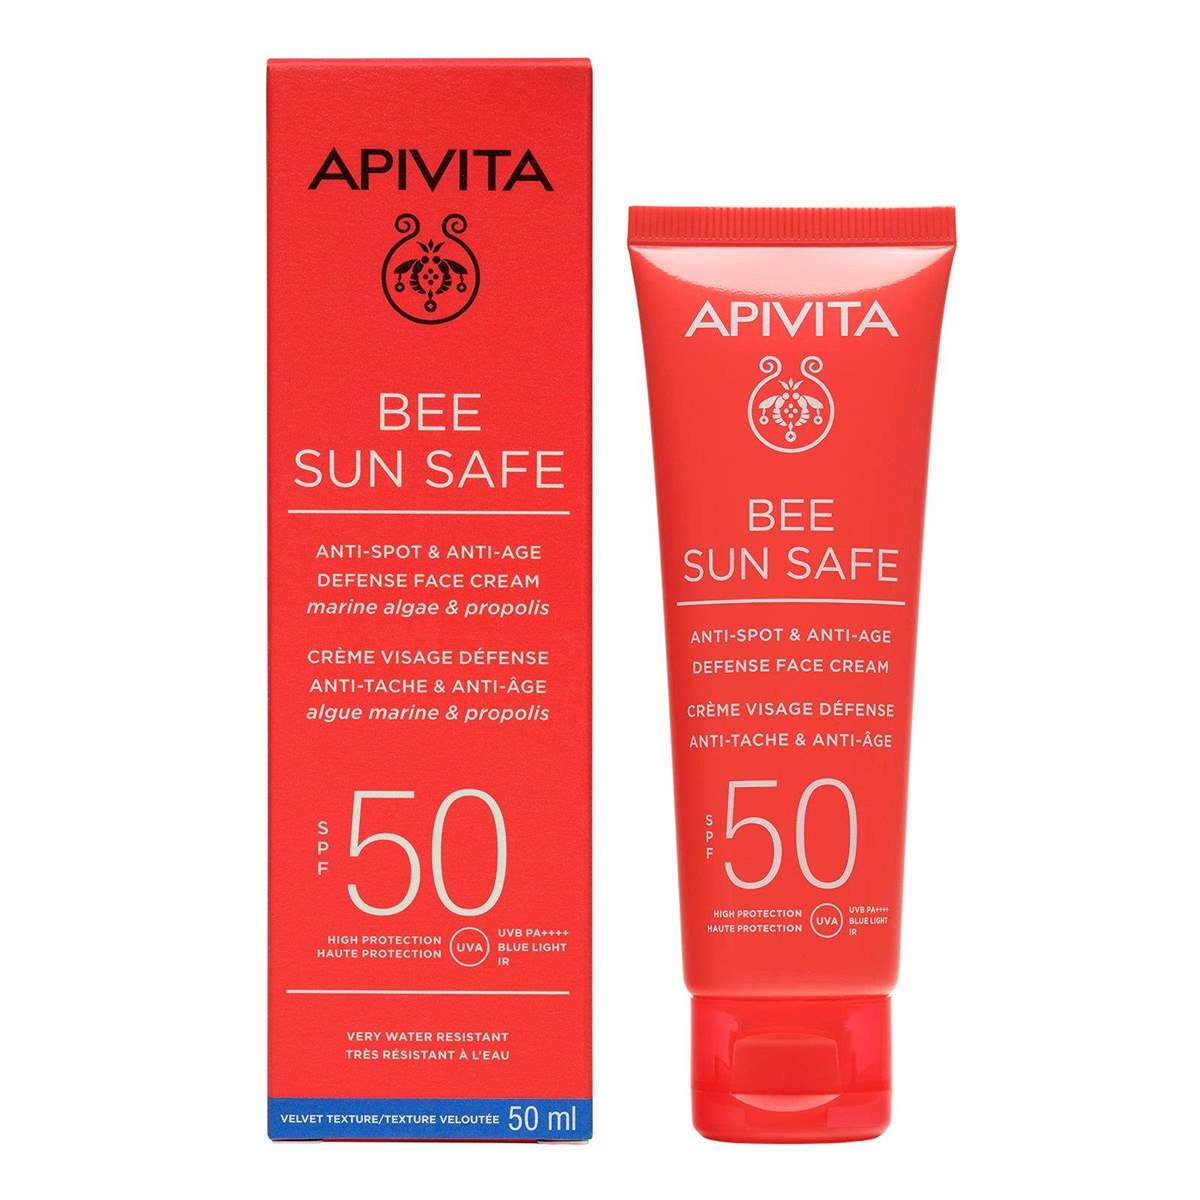 Anti-spot & Anti-age Defense Face Cream SPF50   